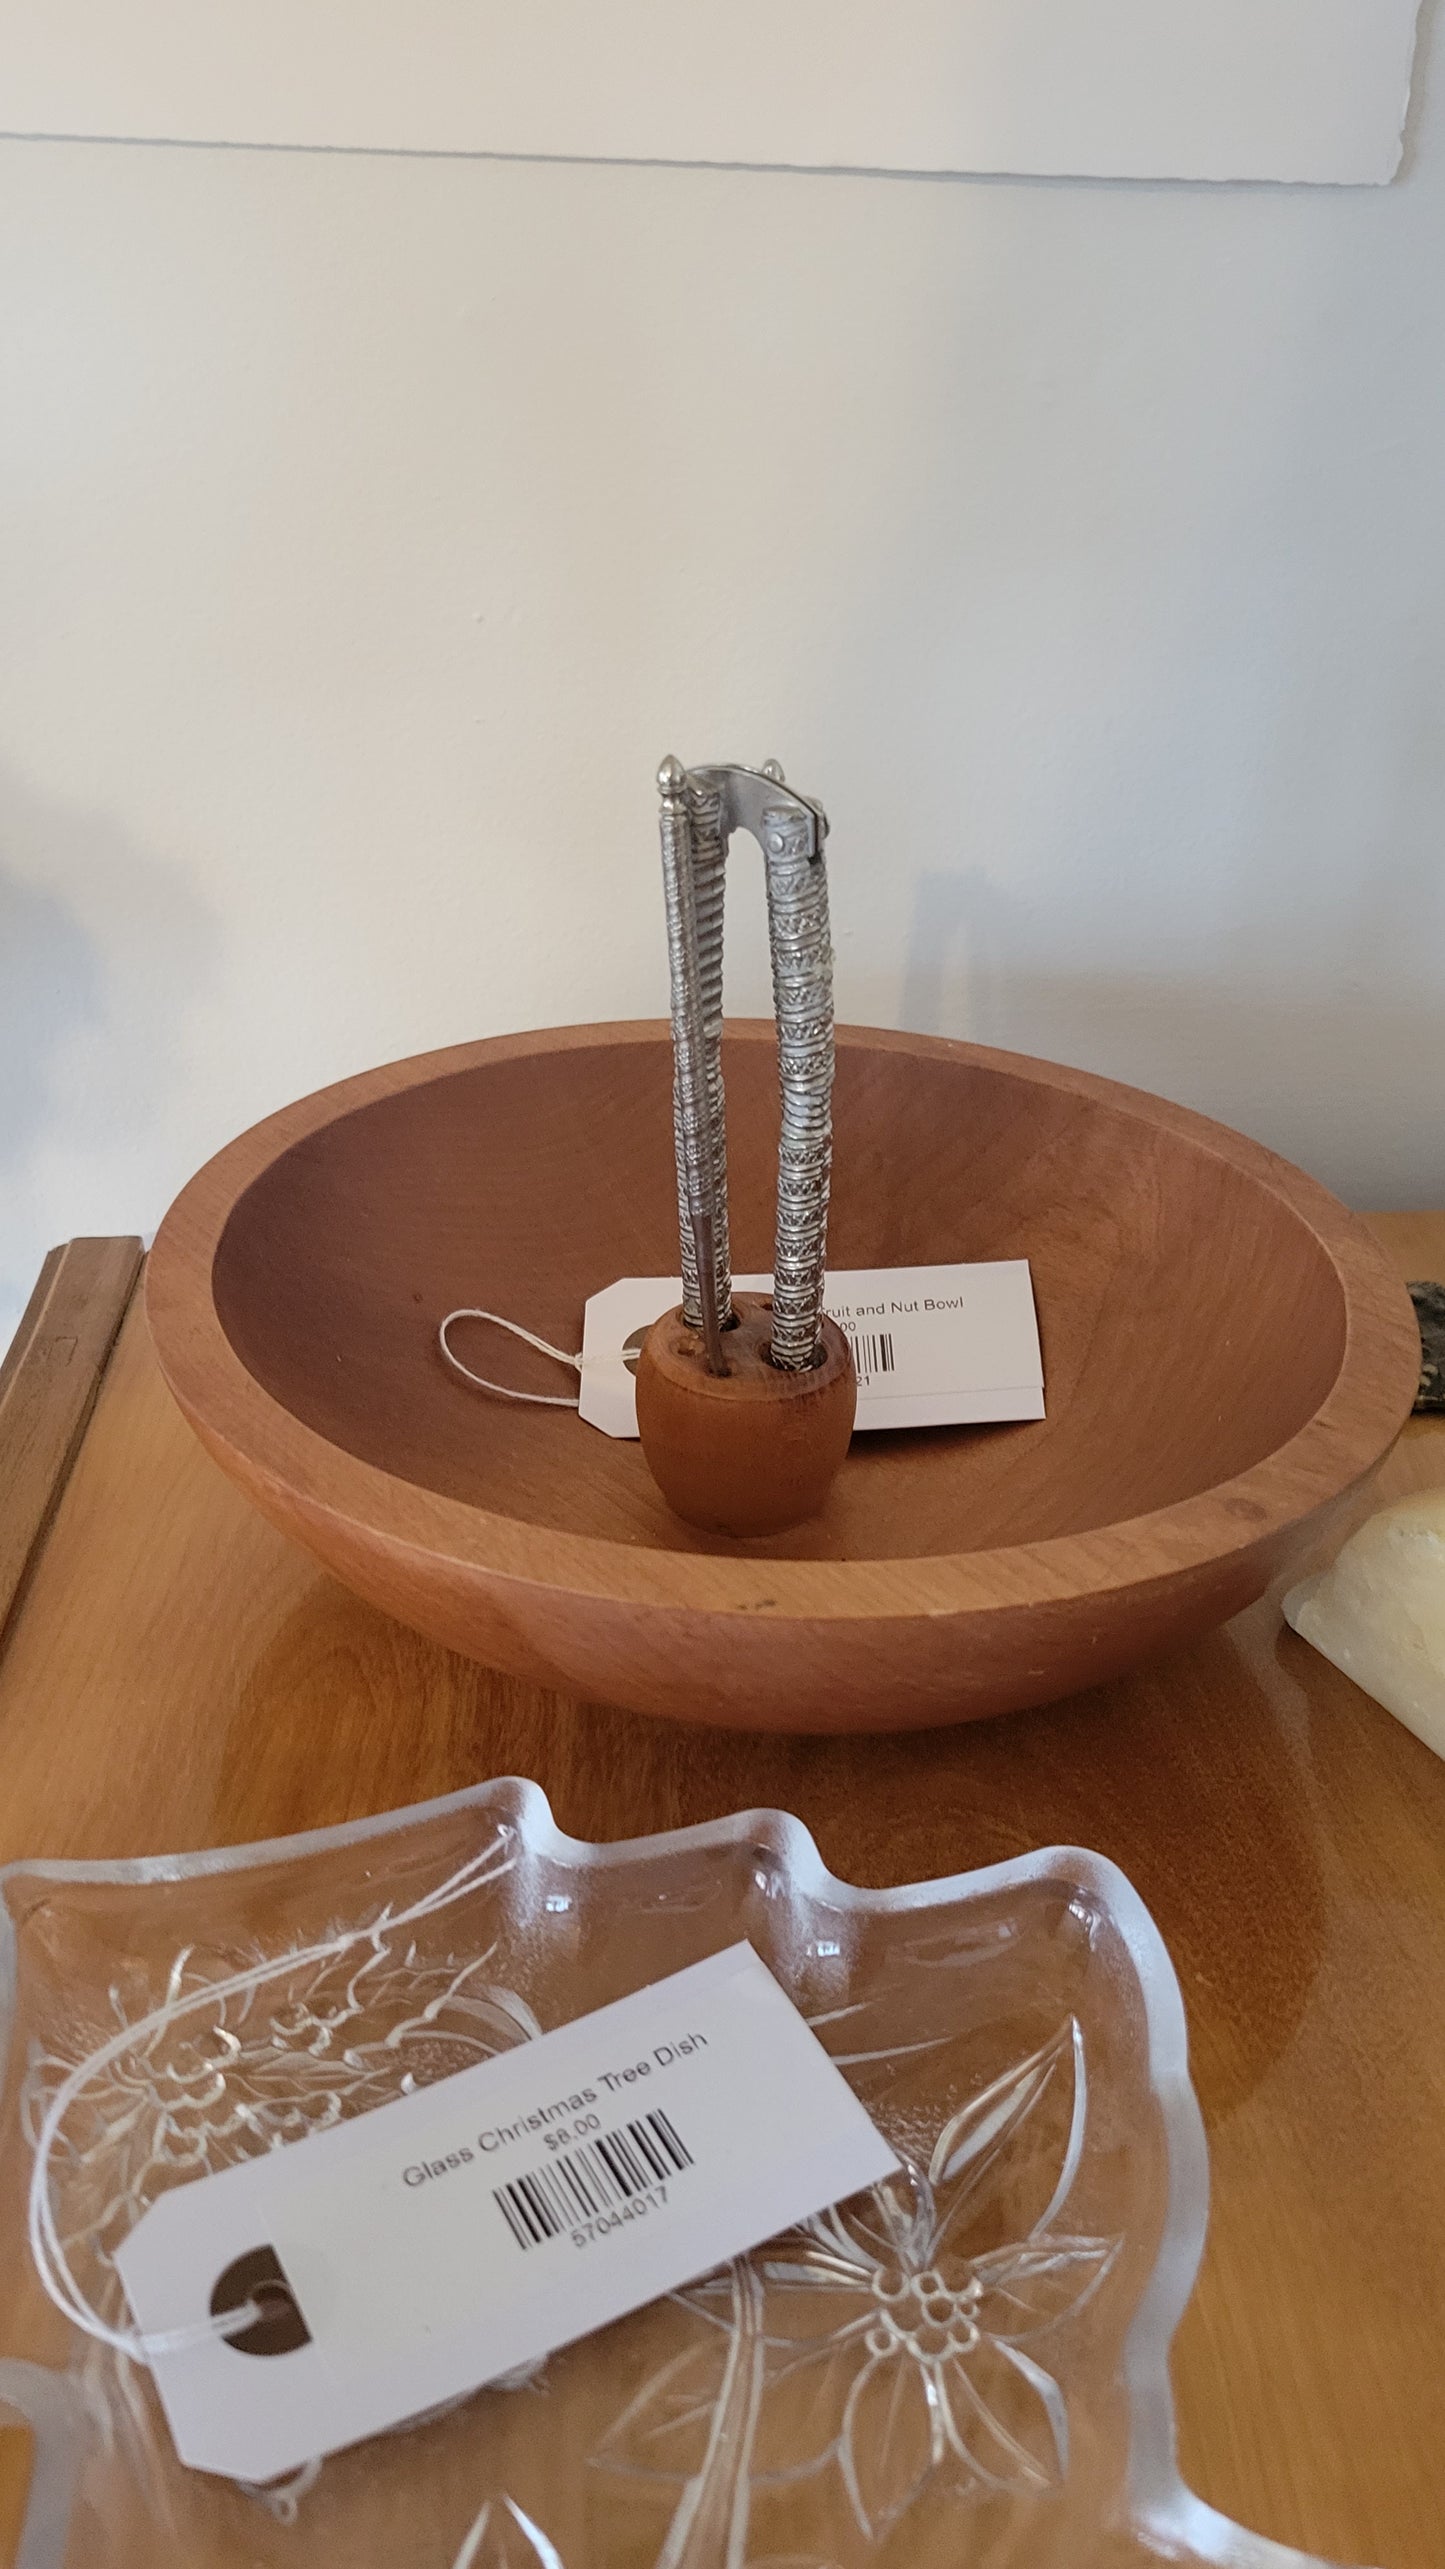 Danish Wood Fruit and Nut Bowl